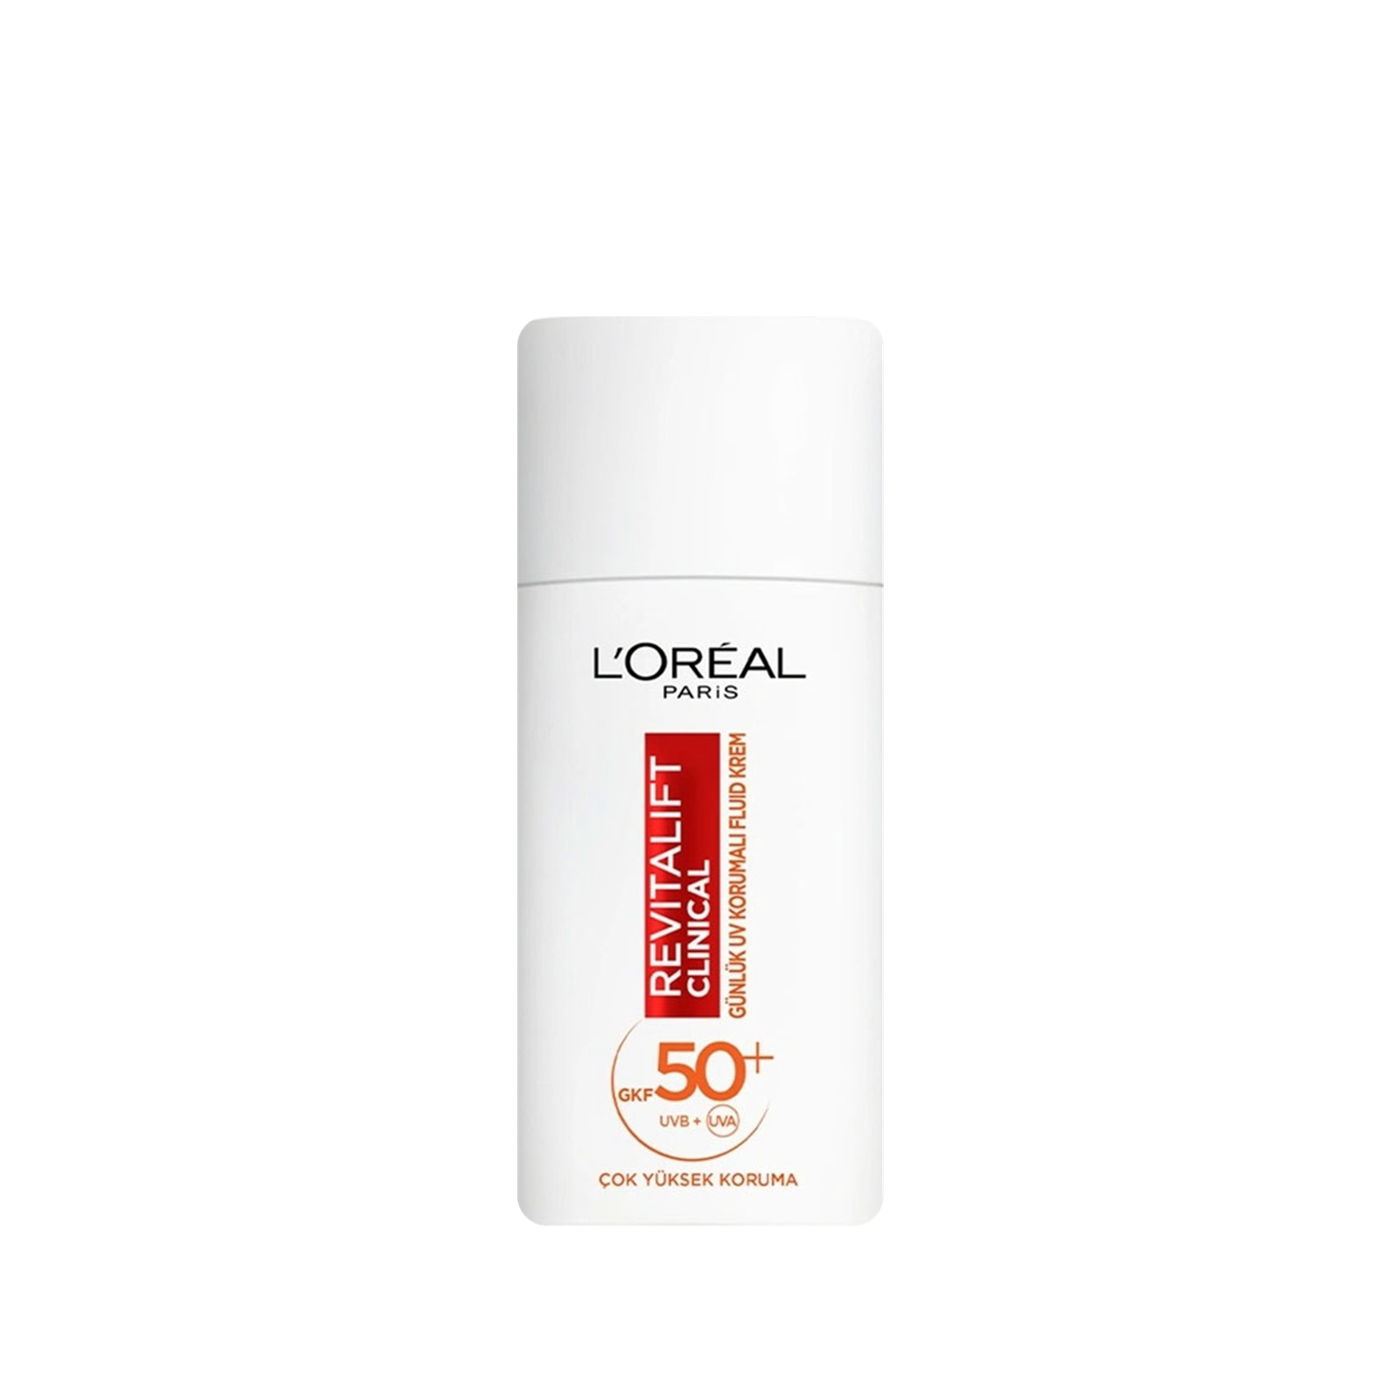 L'Oréal Paris Revitalift Clinical SPF 50+ Günlük Yüksek UV Korumalı Yüz Güneş Kremi  kapak resmi